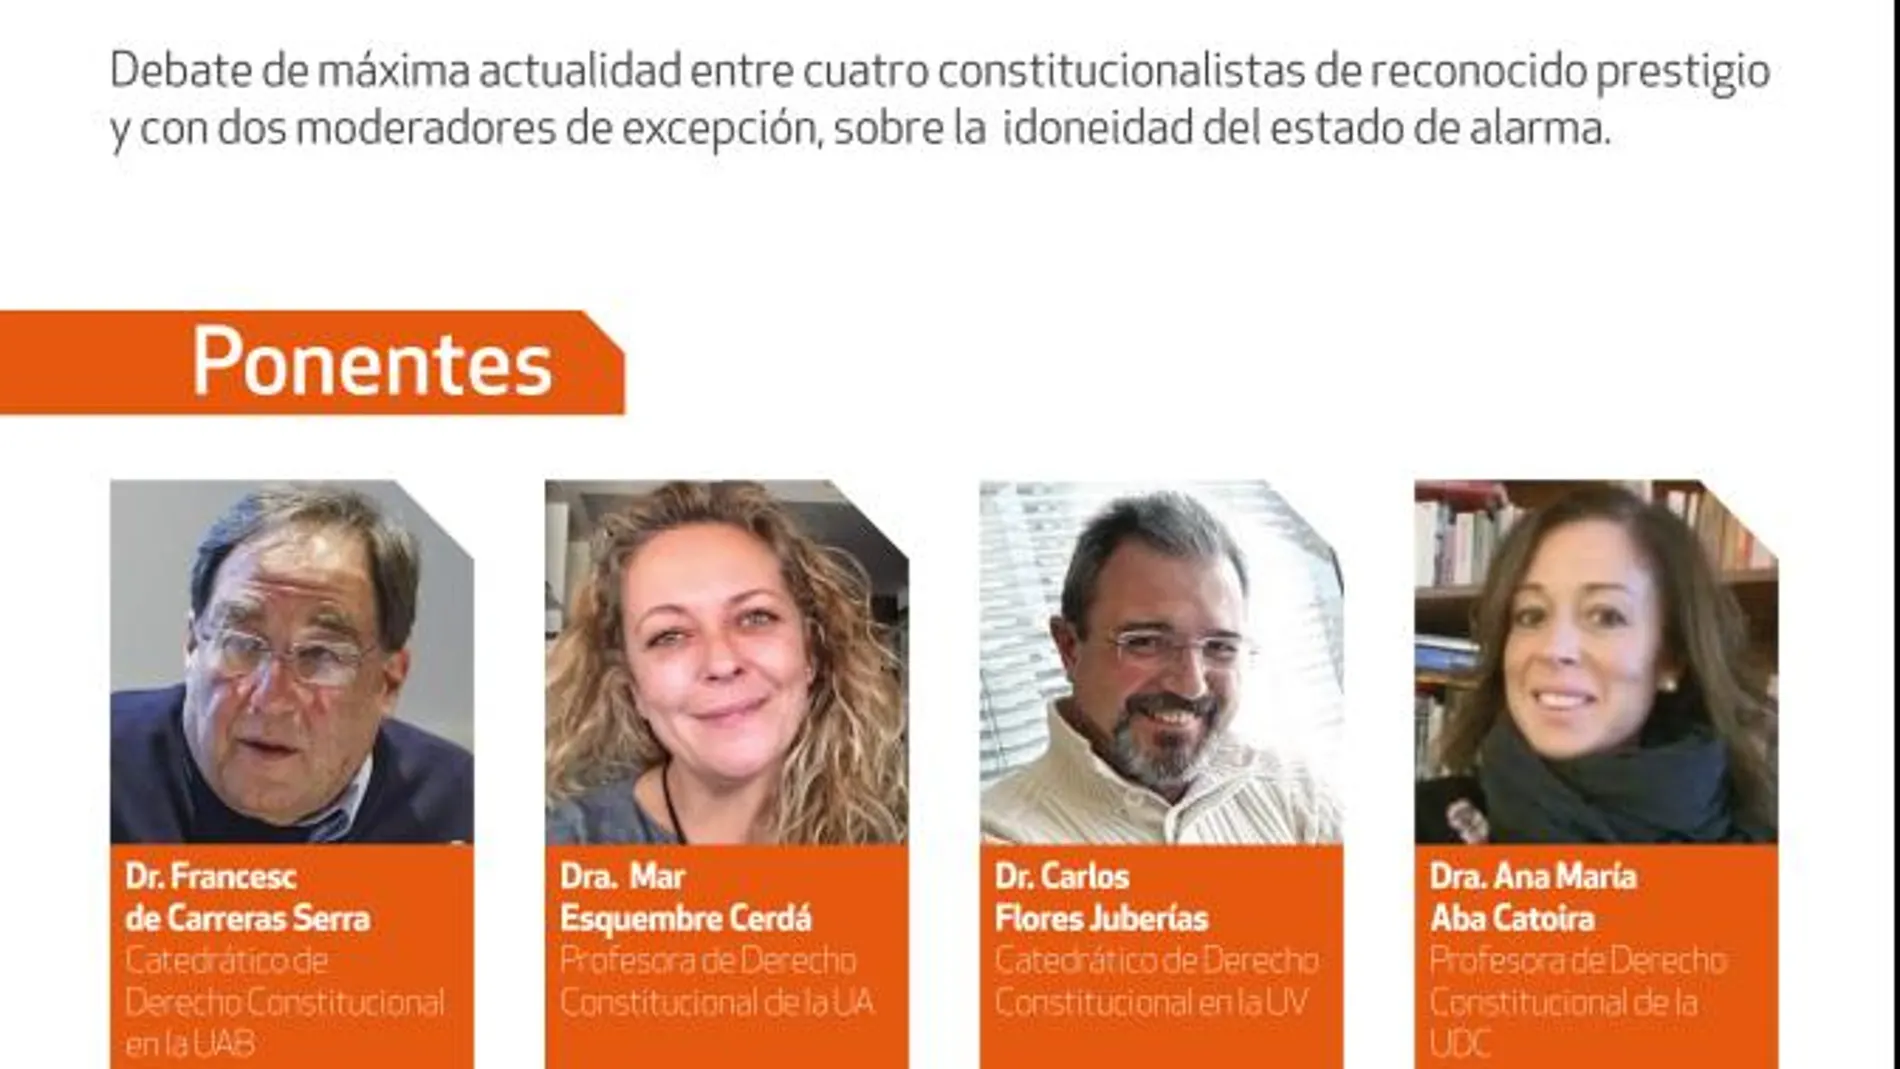 Los ponentes serán Francesc de Carreras Serra, Mar Esquembre Cerdá, Carlos Flores Juberías y Ana María Aba Catoira